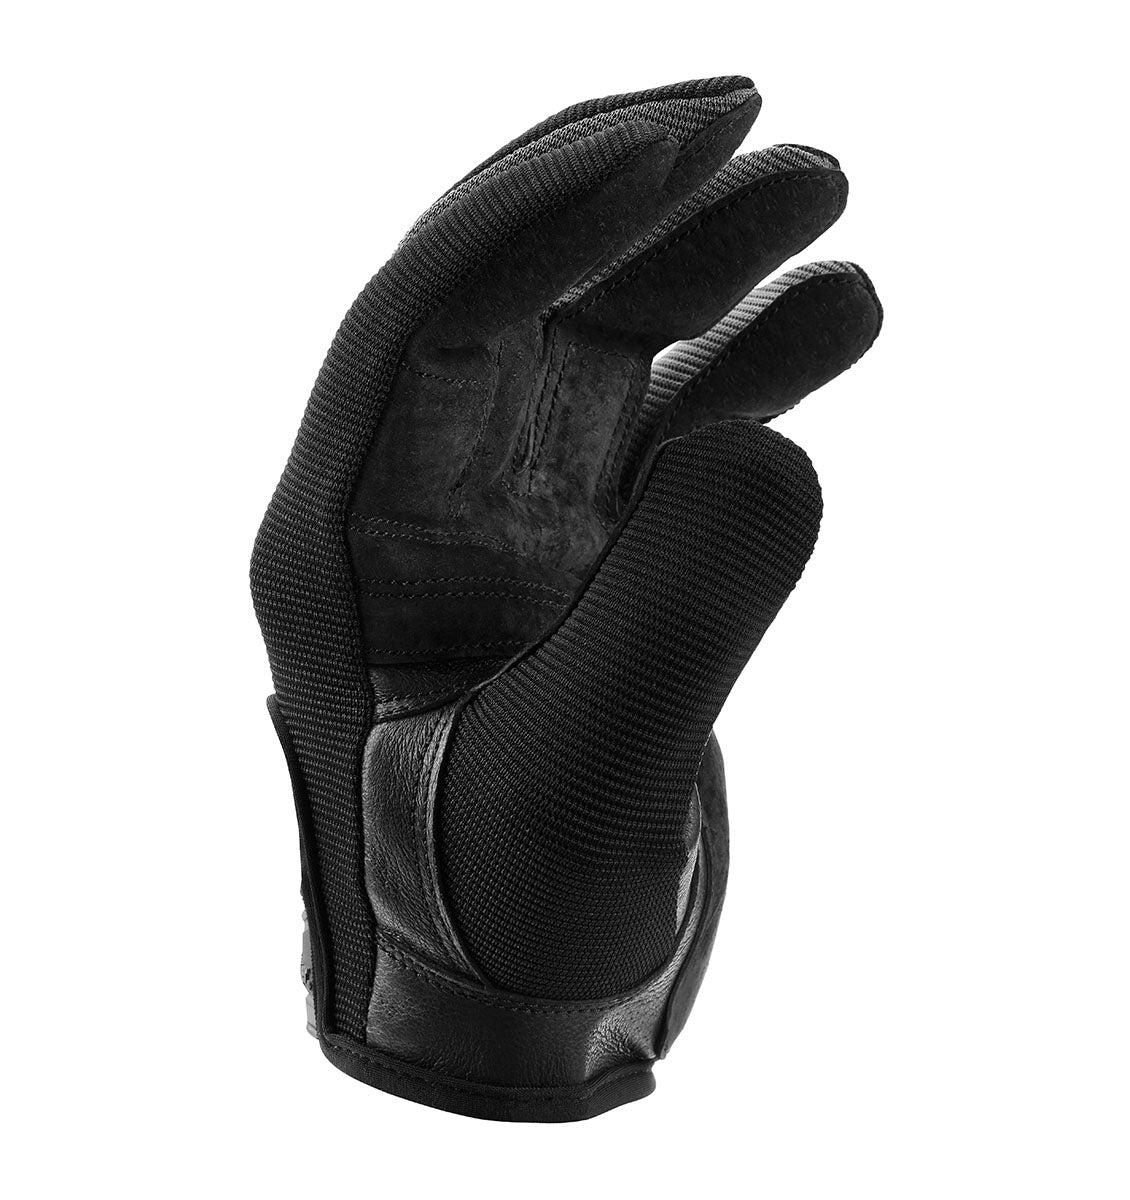 Harbinger Power Protect Gloves - Men's - Black - 2